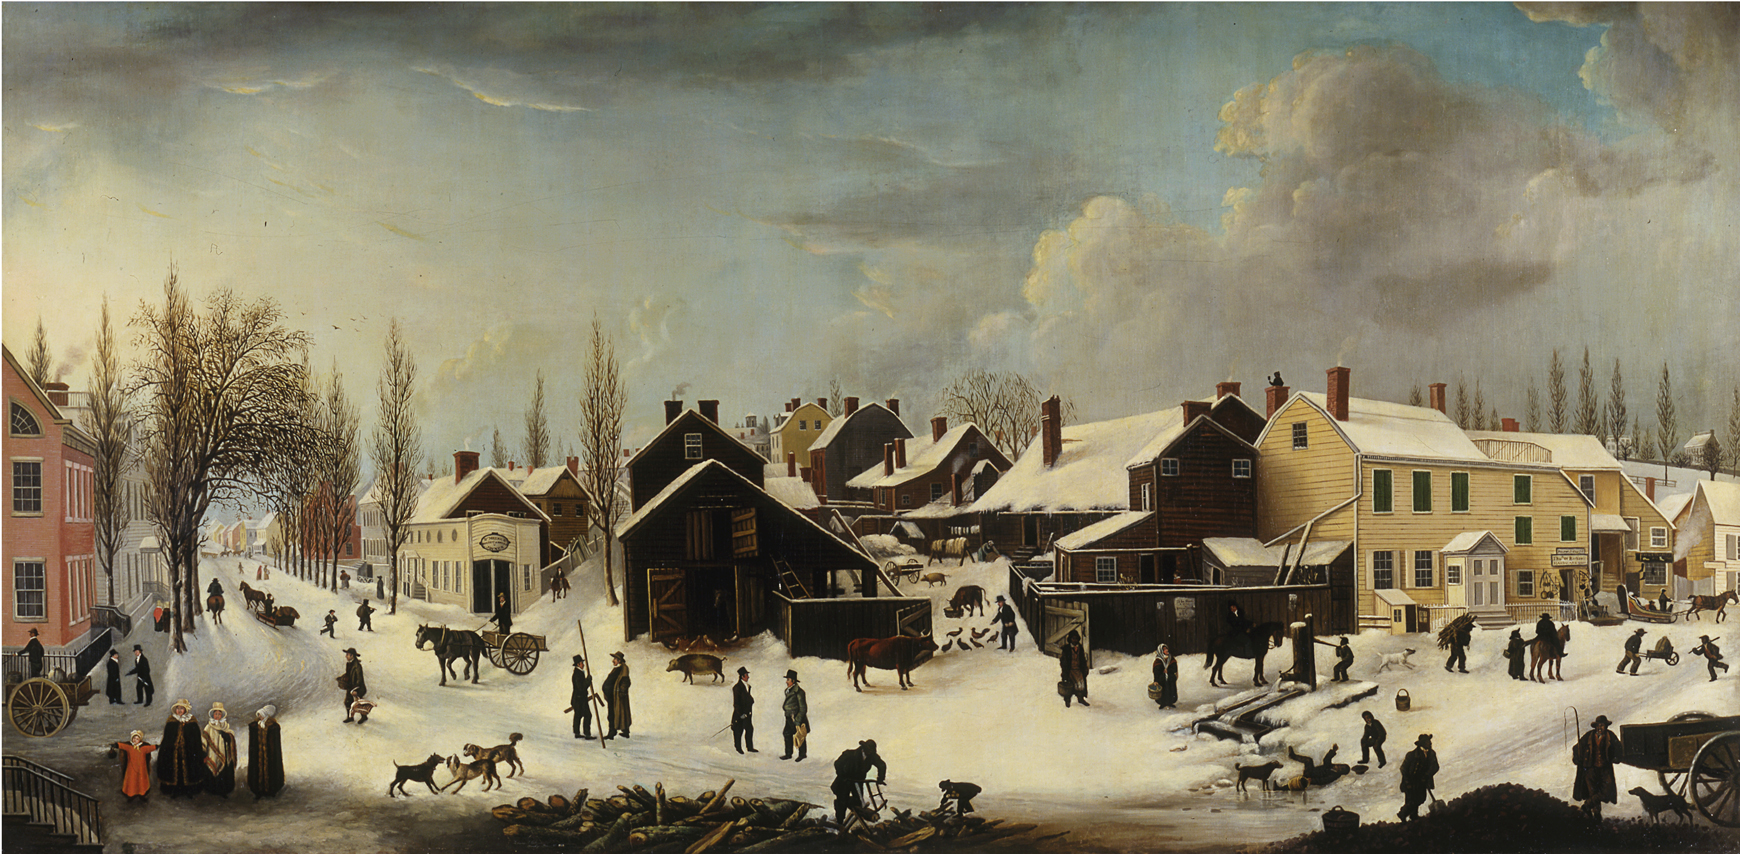 Louisa Ann Coleman, Scène d'hiver à Brooklyn, New York, 1817-1820, 1853. Musée de la ville de New York. 53.2.